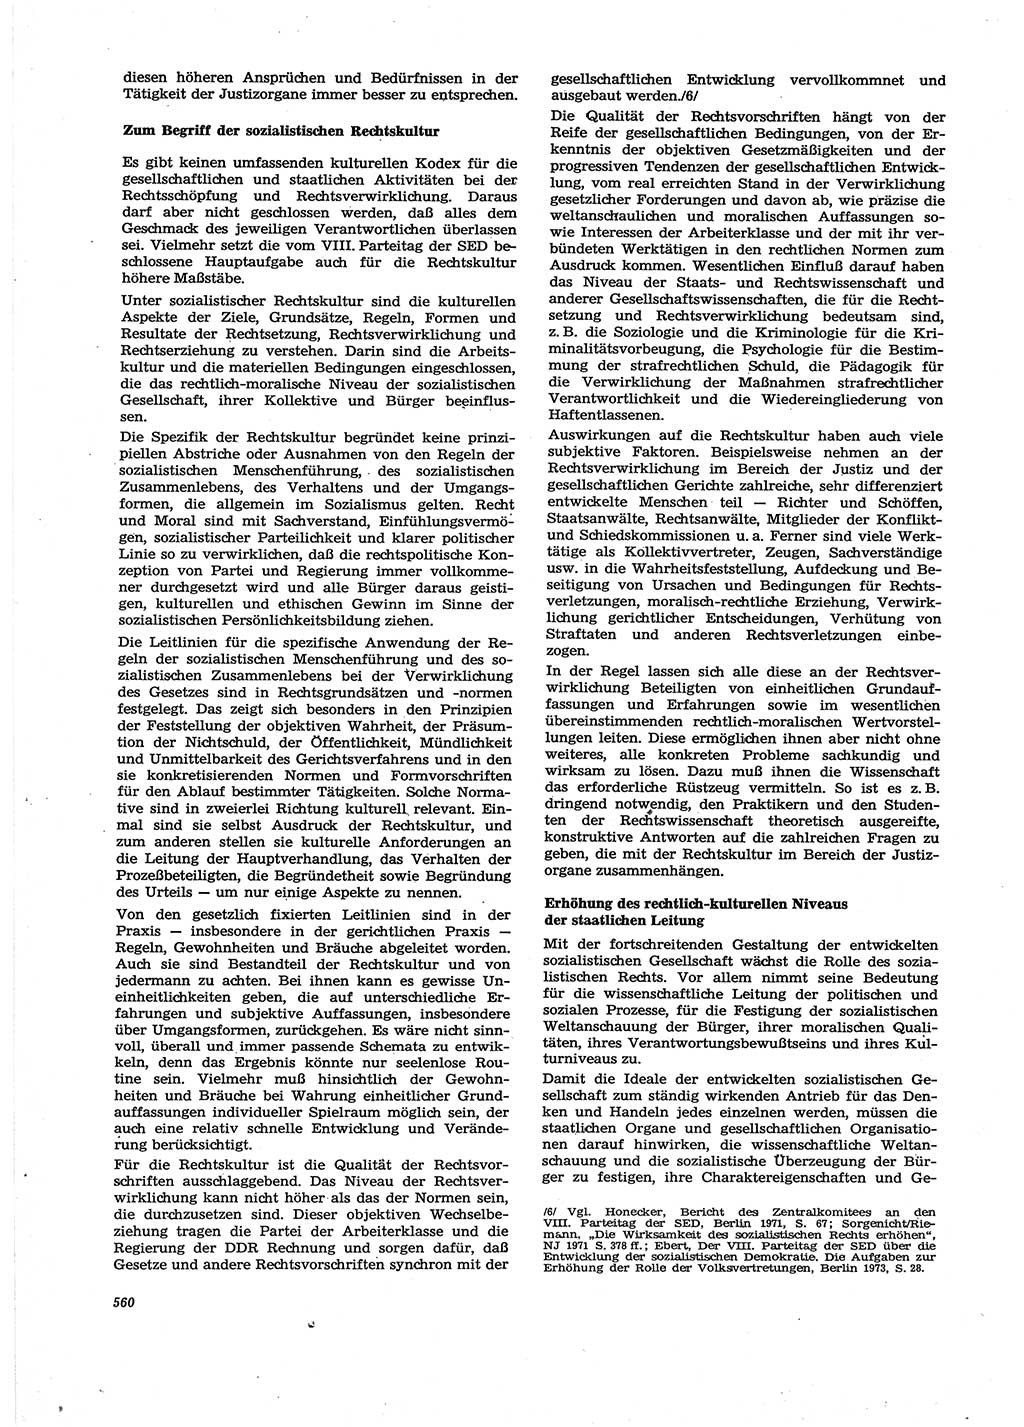 Neue Justiz (NJ), Zeitschrift für Recht und Rechtswissenschaft [Deutsche Demokratische Republik (DDR)], 27. Jahrgang 1973, Seite 560 (NJ DDR 1973, S. 560)